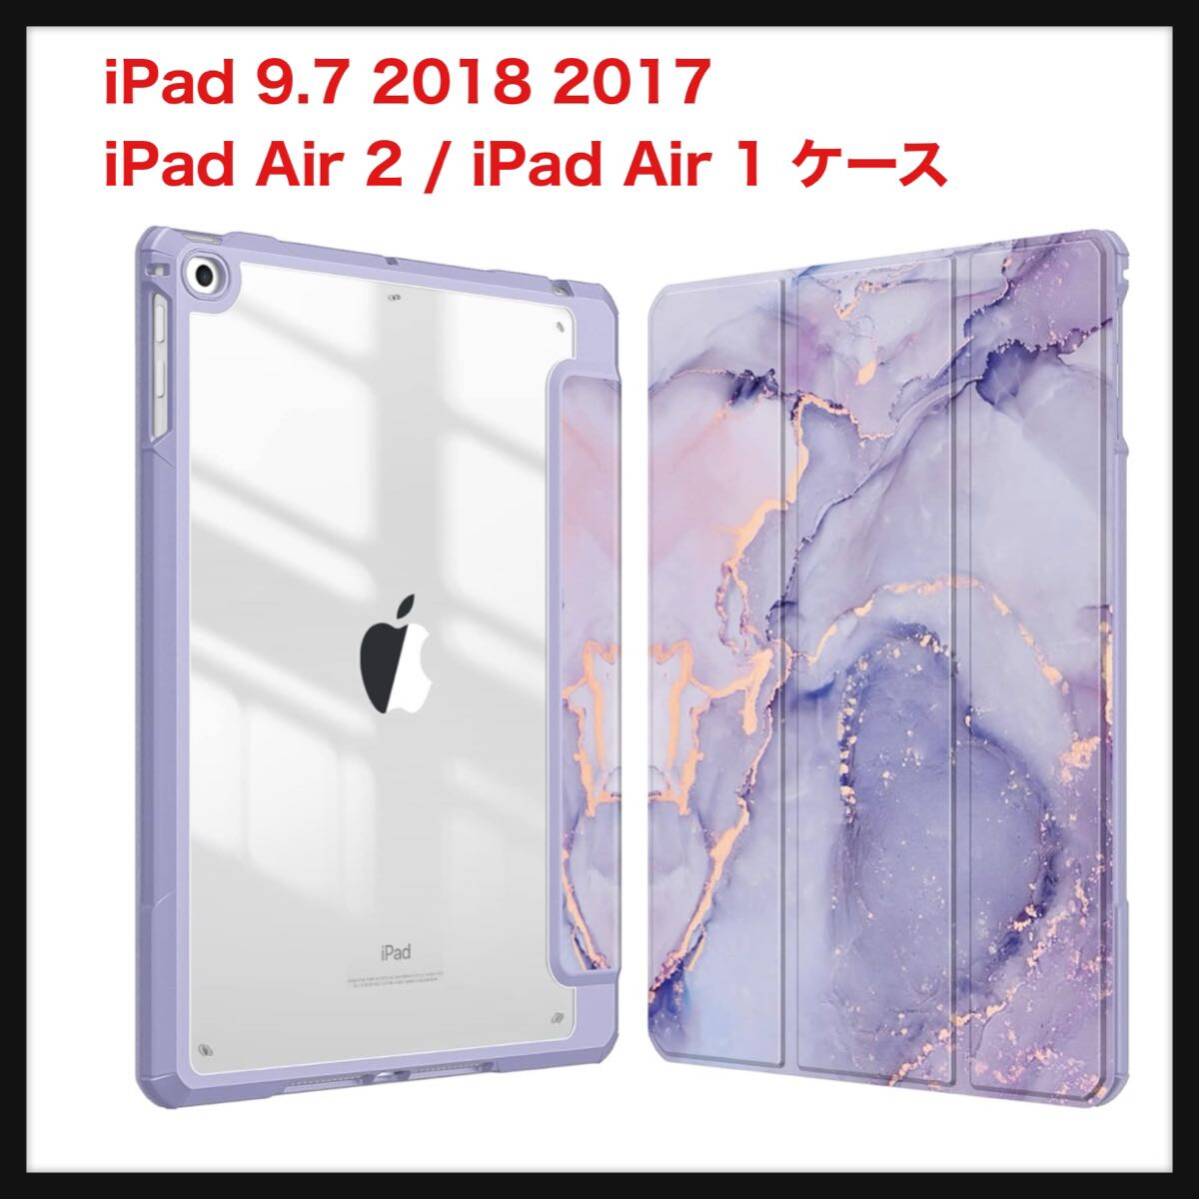 【開封のみ】Fintie ★iPad 9.7 2018 2017 / iPad Air 2 / iPad Air 1 ケース 透明バックカバー (柄 X マーブルパープル)_画像1